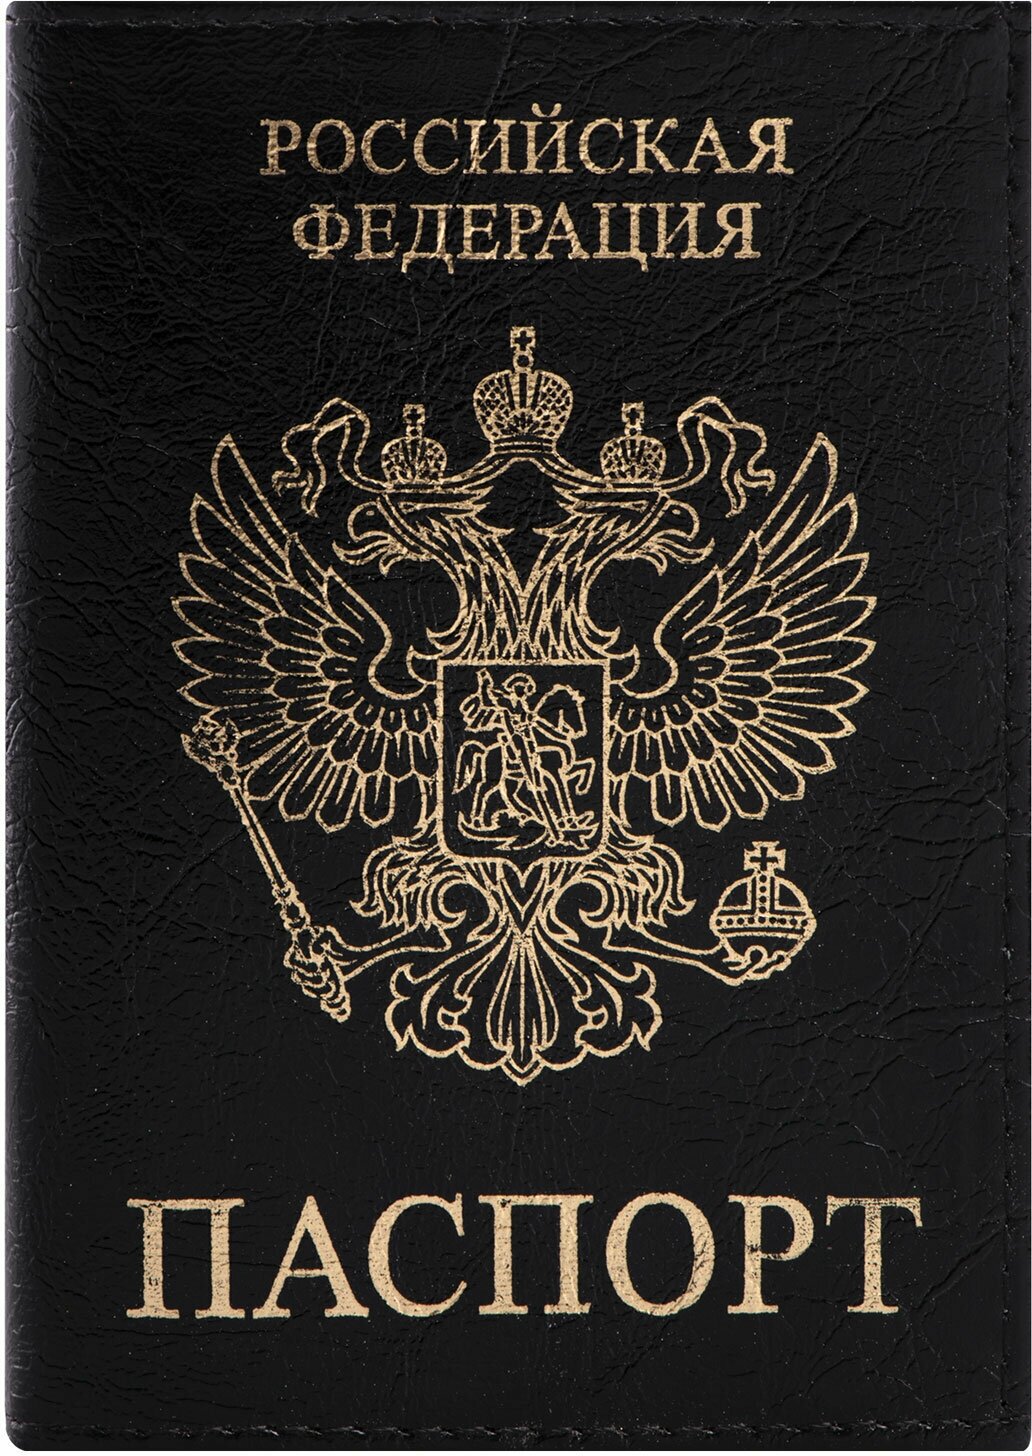 Обложка - чехол для паспорта и документов Staff Profit экокожа 237191